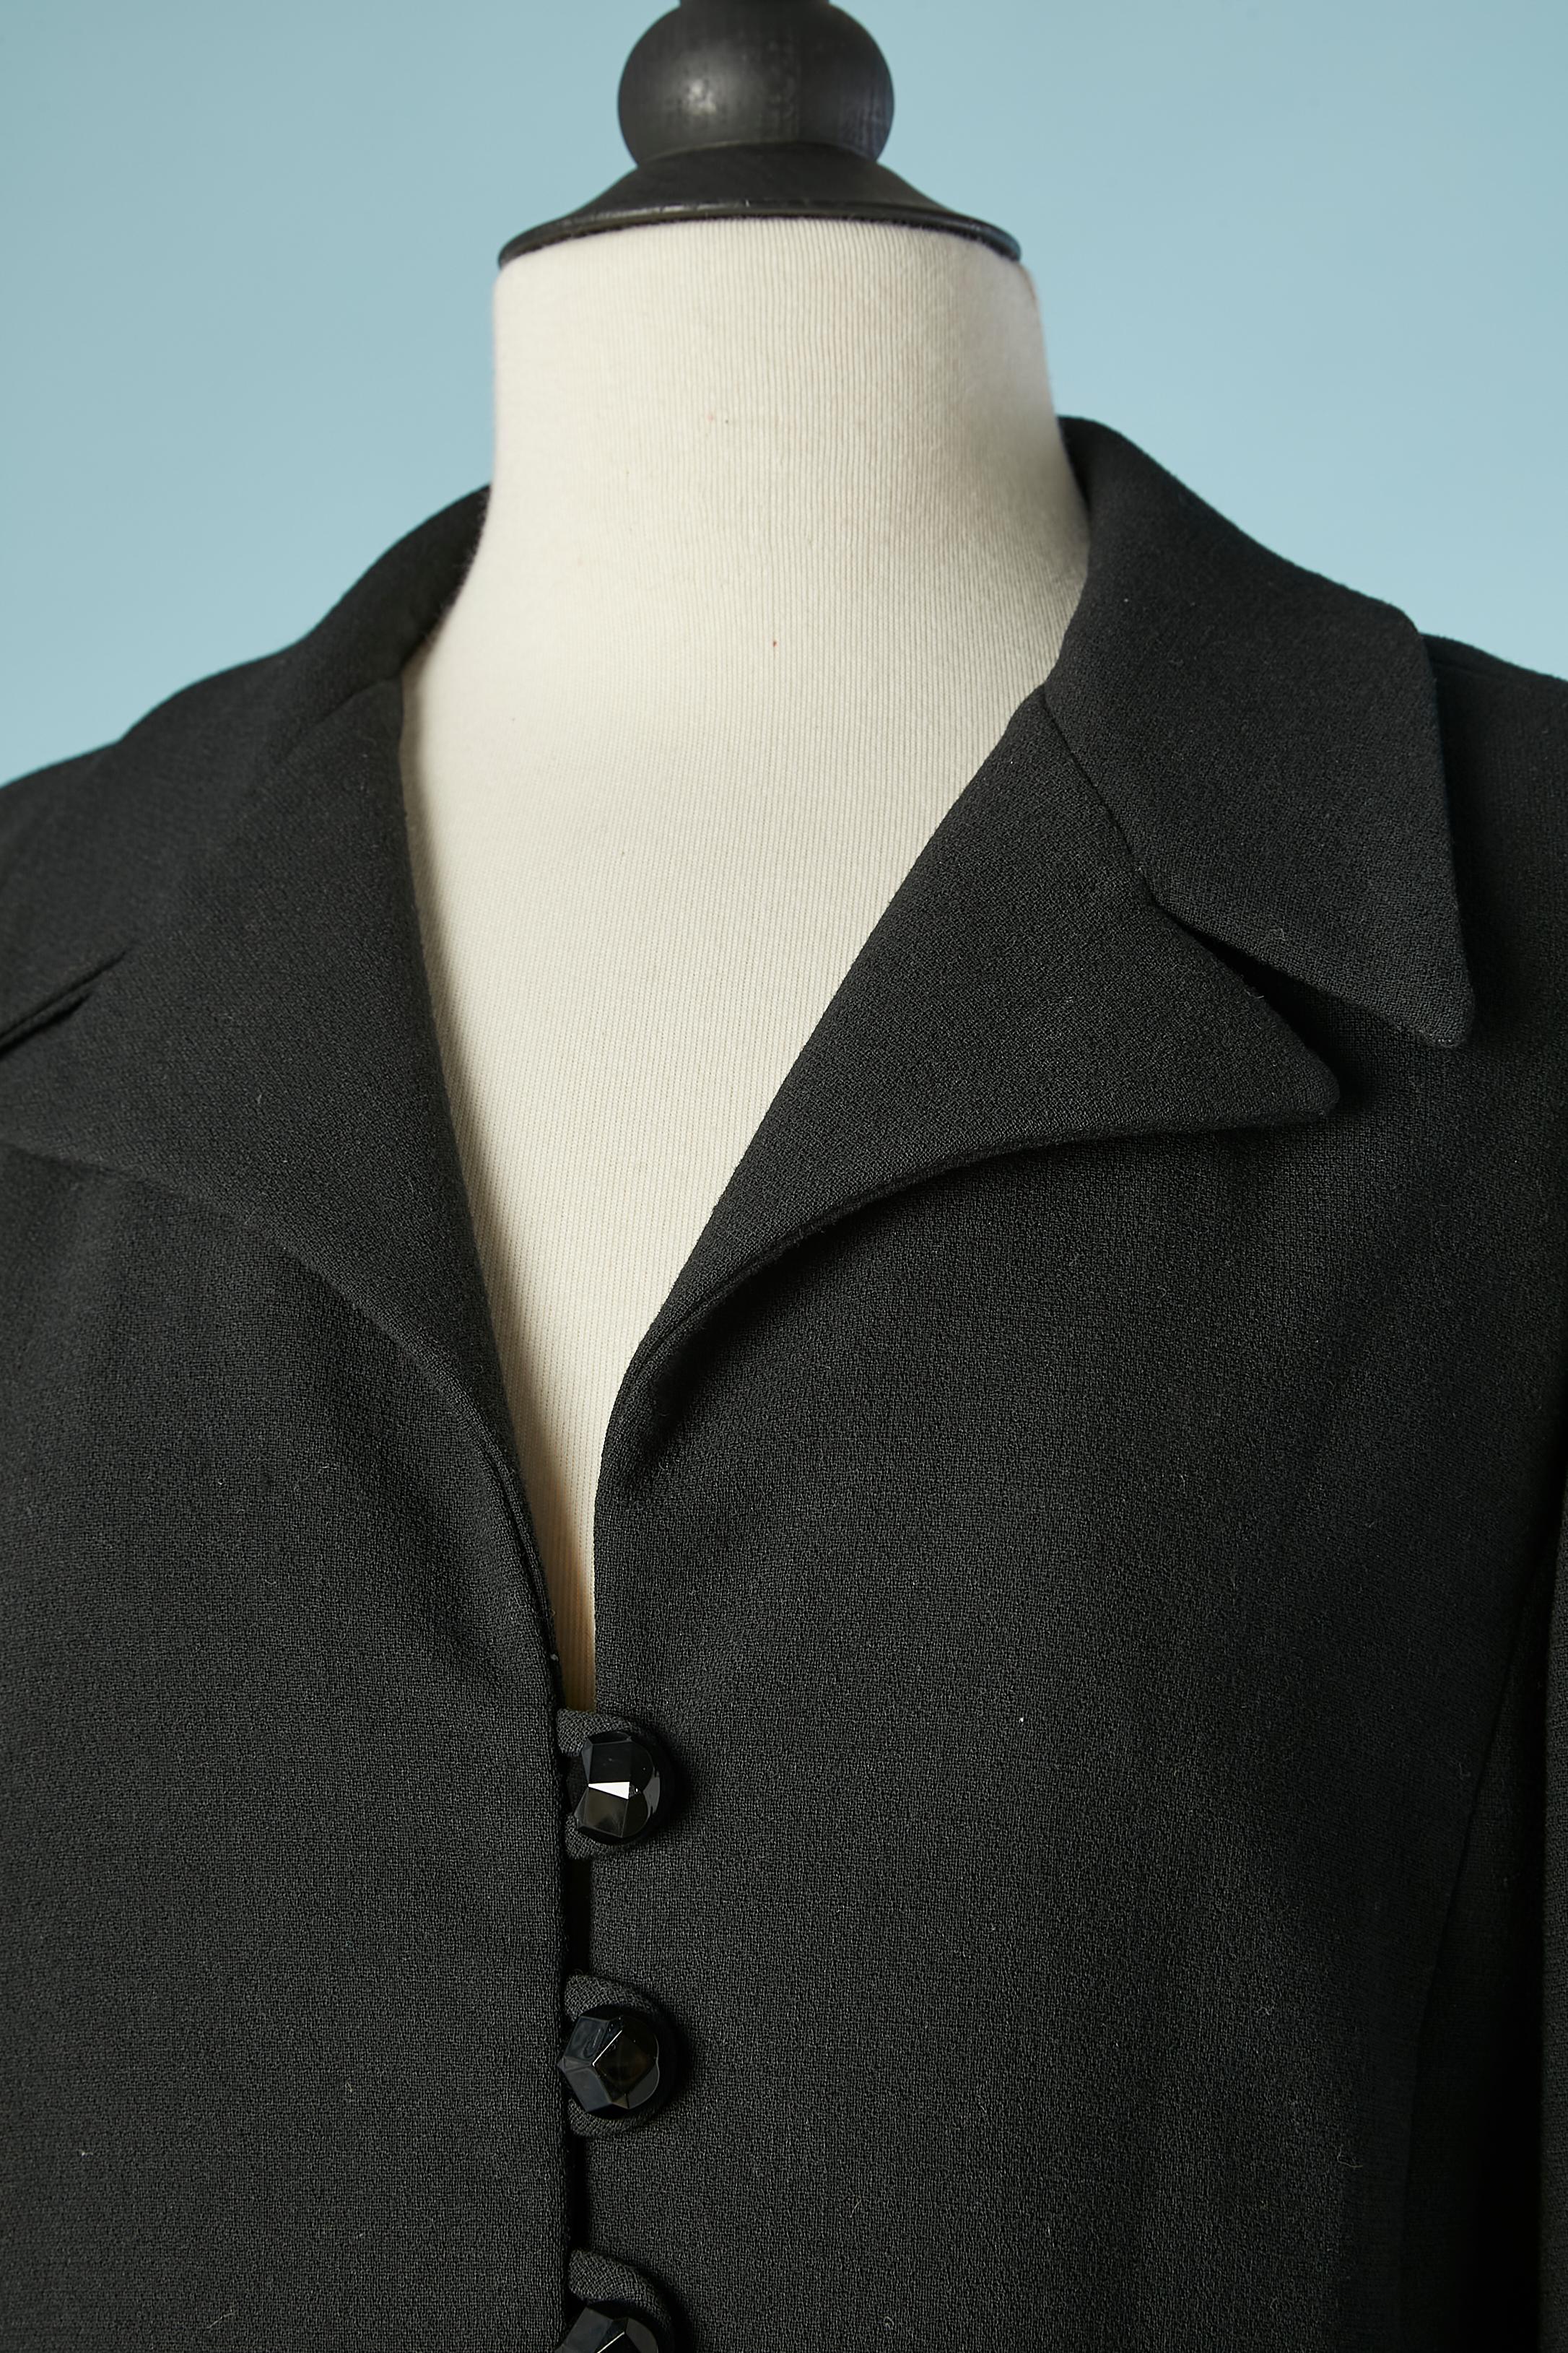 Combinaison-culotte en crêpe de laine noire avec boutons noirs, doublée en rayonne.  Fausses poches. 
TAILLE M